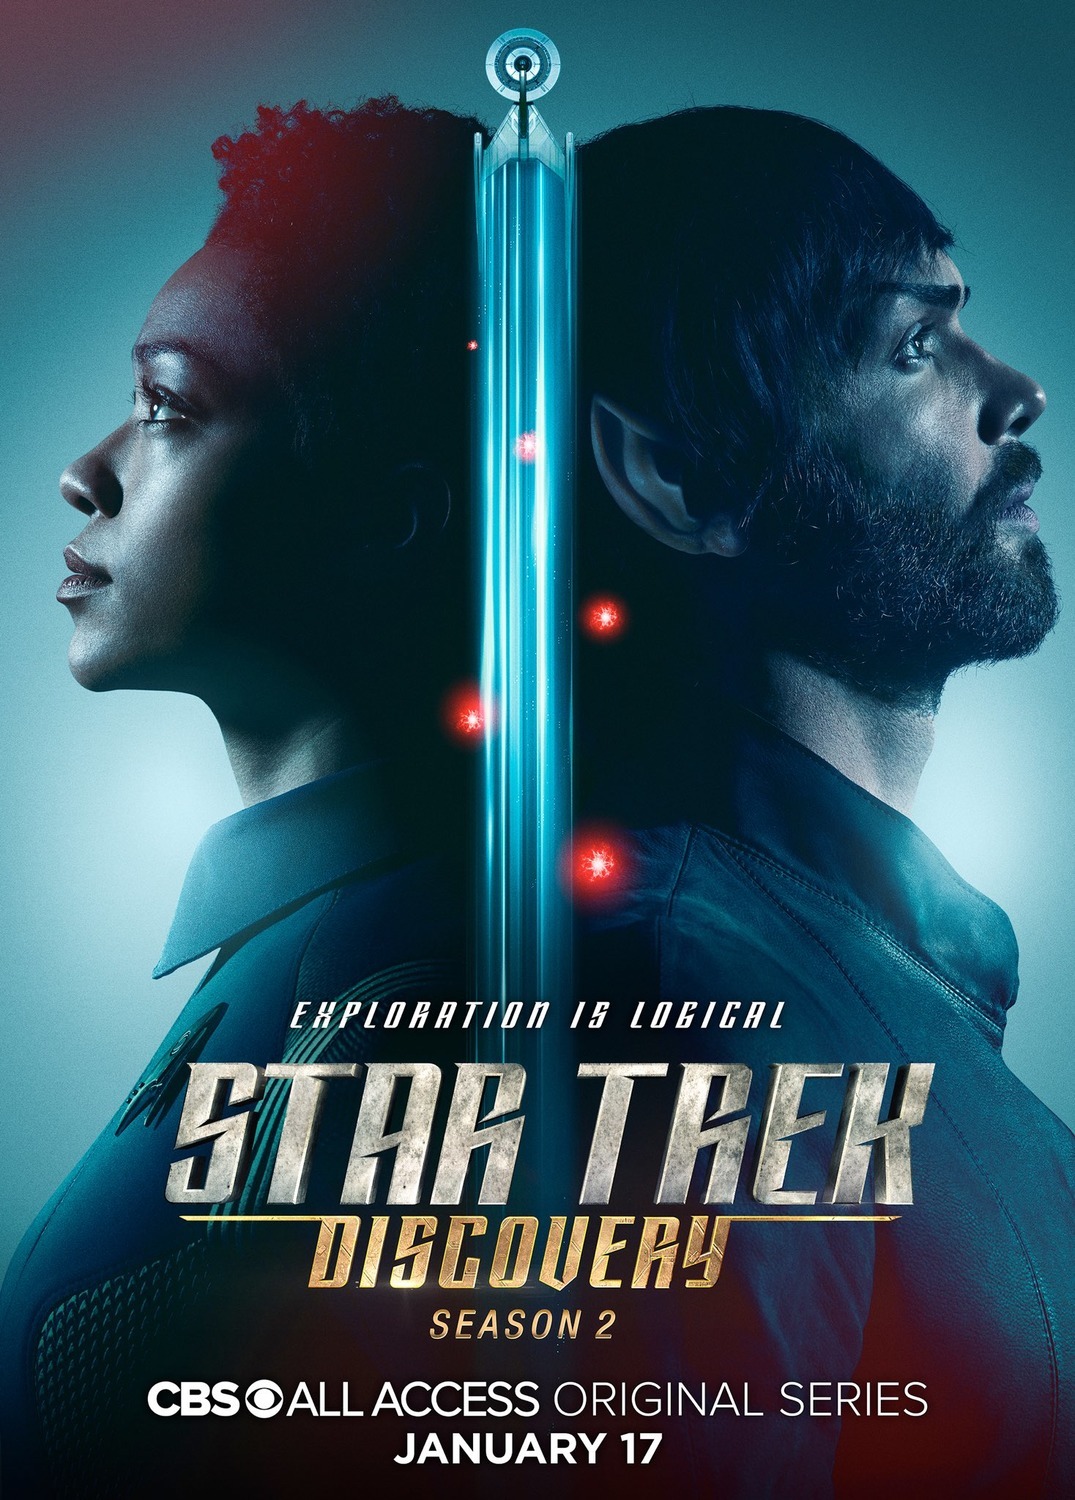 ดูหนังออนไลน์ Star Trek Discovery Season 2 EP.9 สตาร์ เทรค ดิสคัฟเวอรี่ ซีซั่นที่ 2 ตอนที่ 9